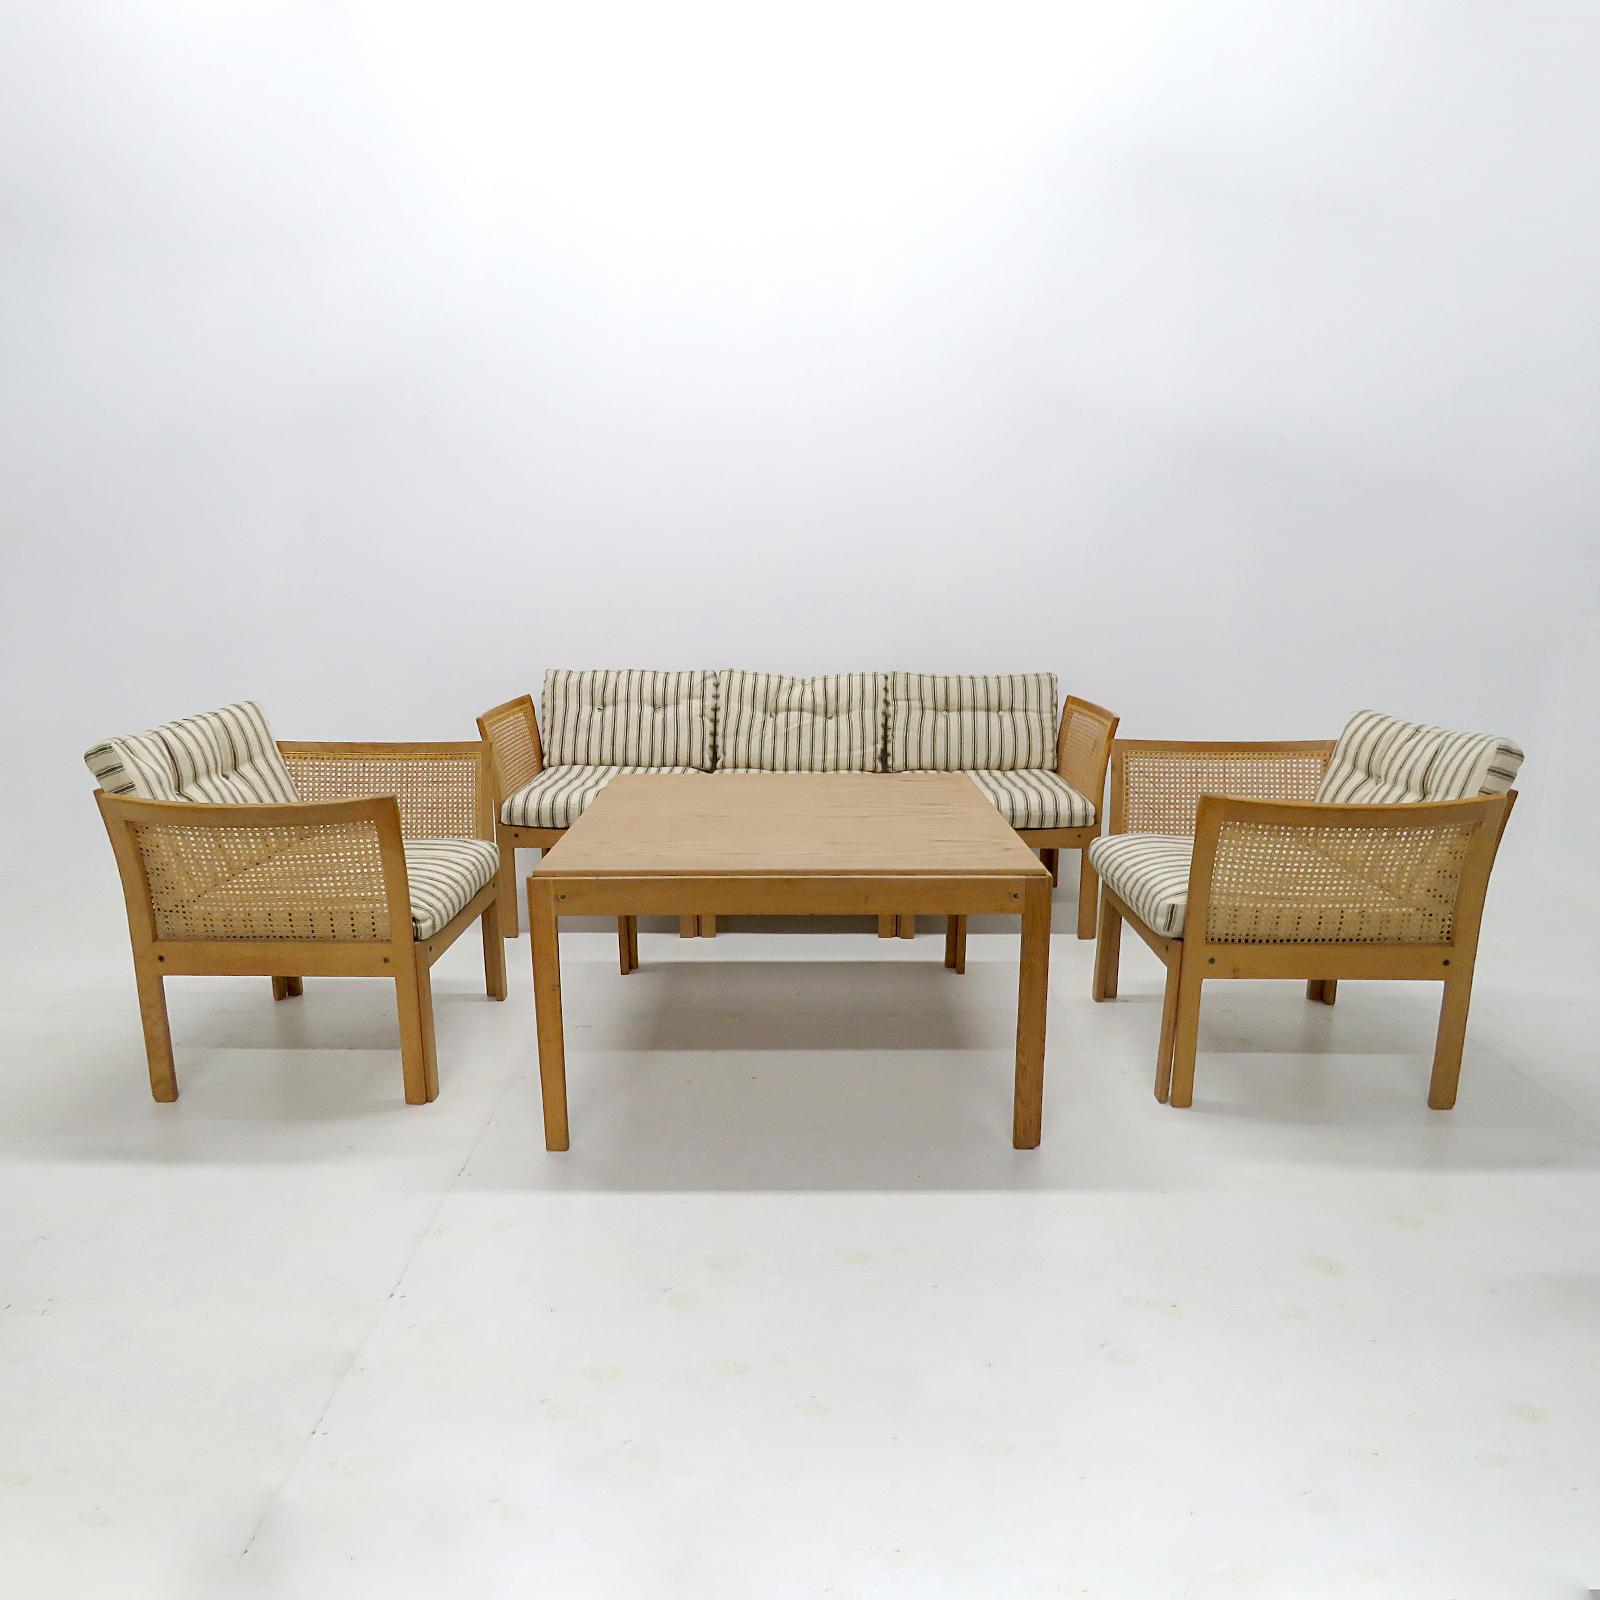 Magnifique ensemble de salon conçu par A.I.C. Design/One pour C.F. Christensen, Silkeborg, au Danemark, 1960, composé de deux fauteuils, d'un canapé à trois places (avec d'autres configurations possibles) et d'une table basse avec des cadres en